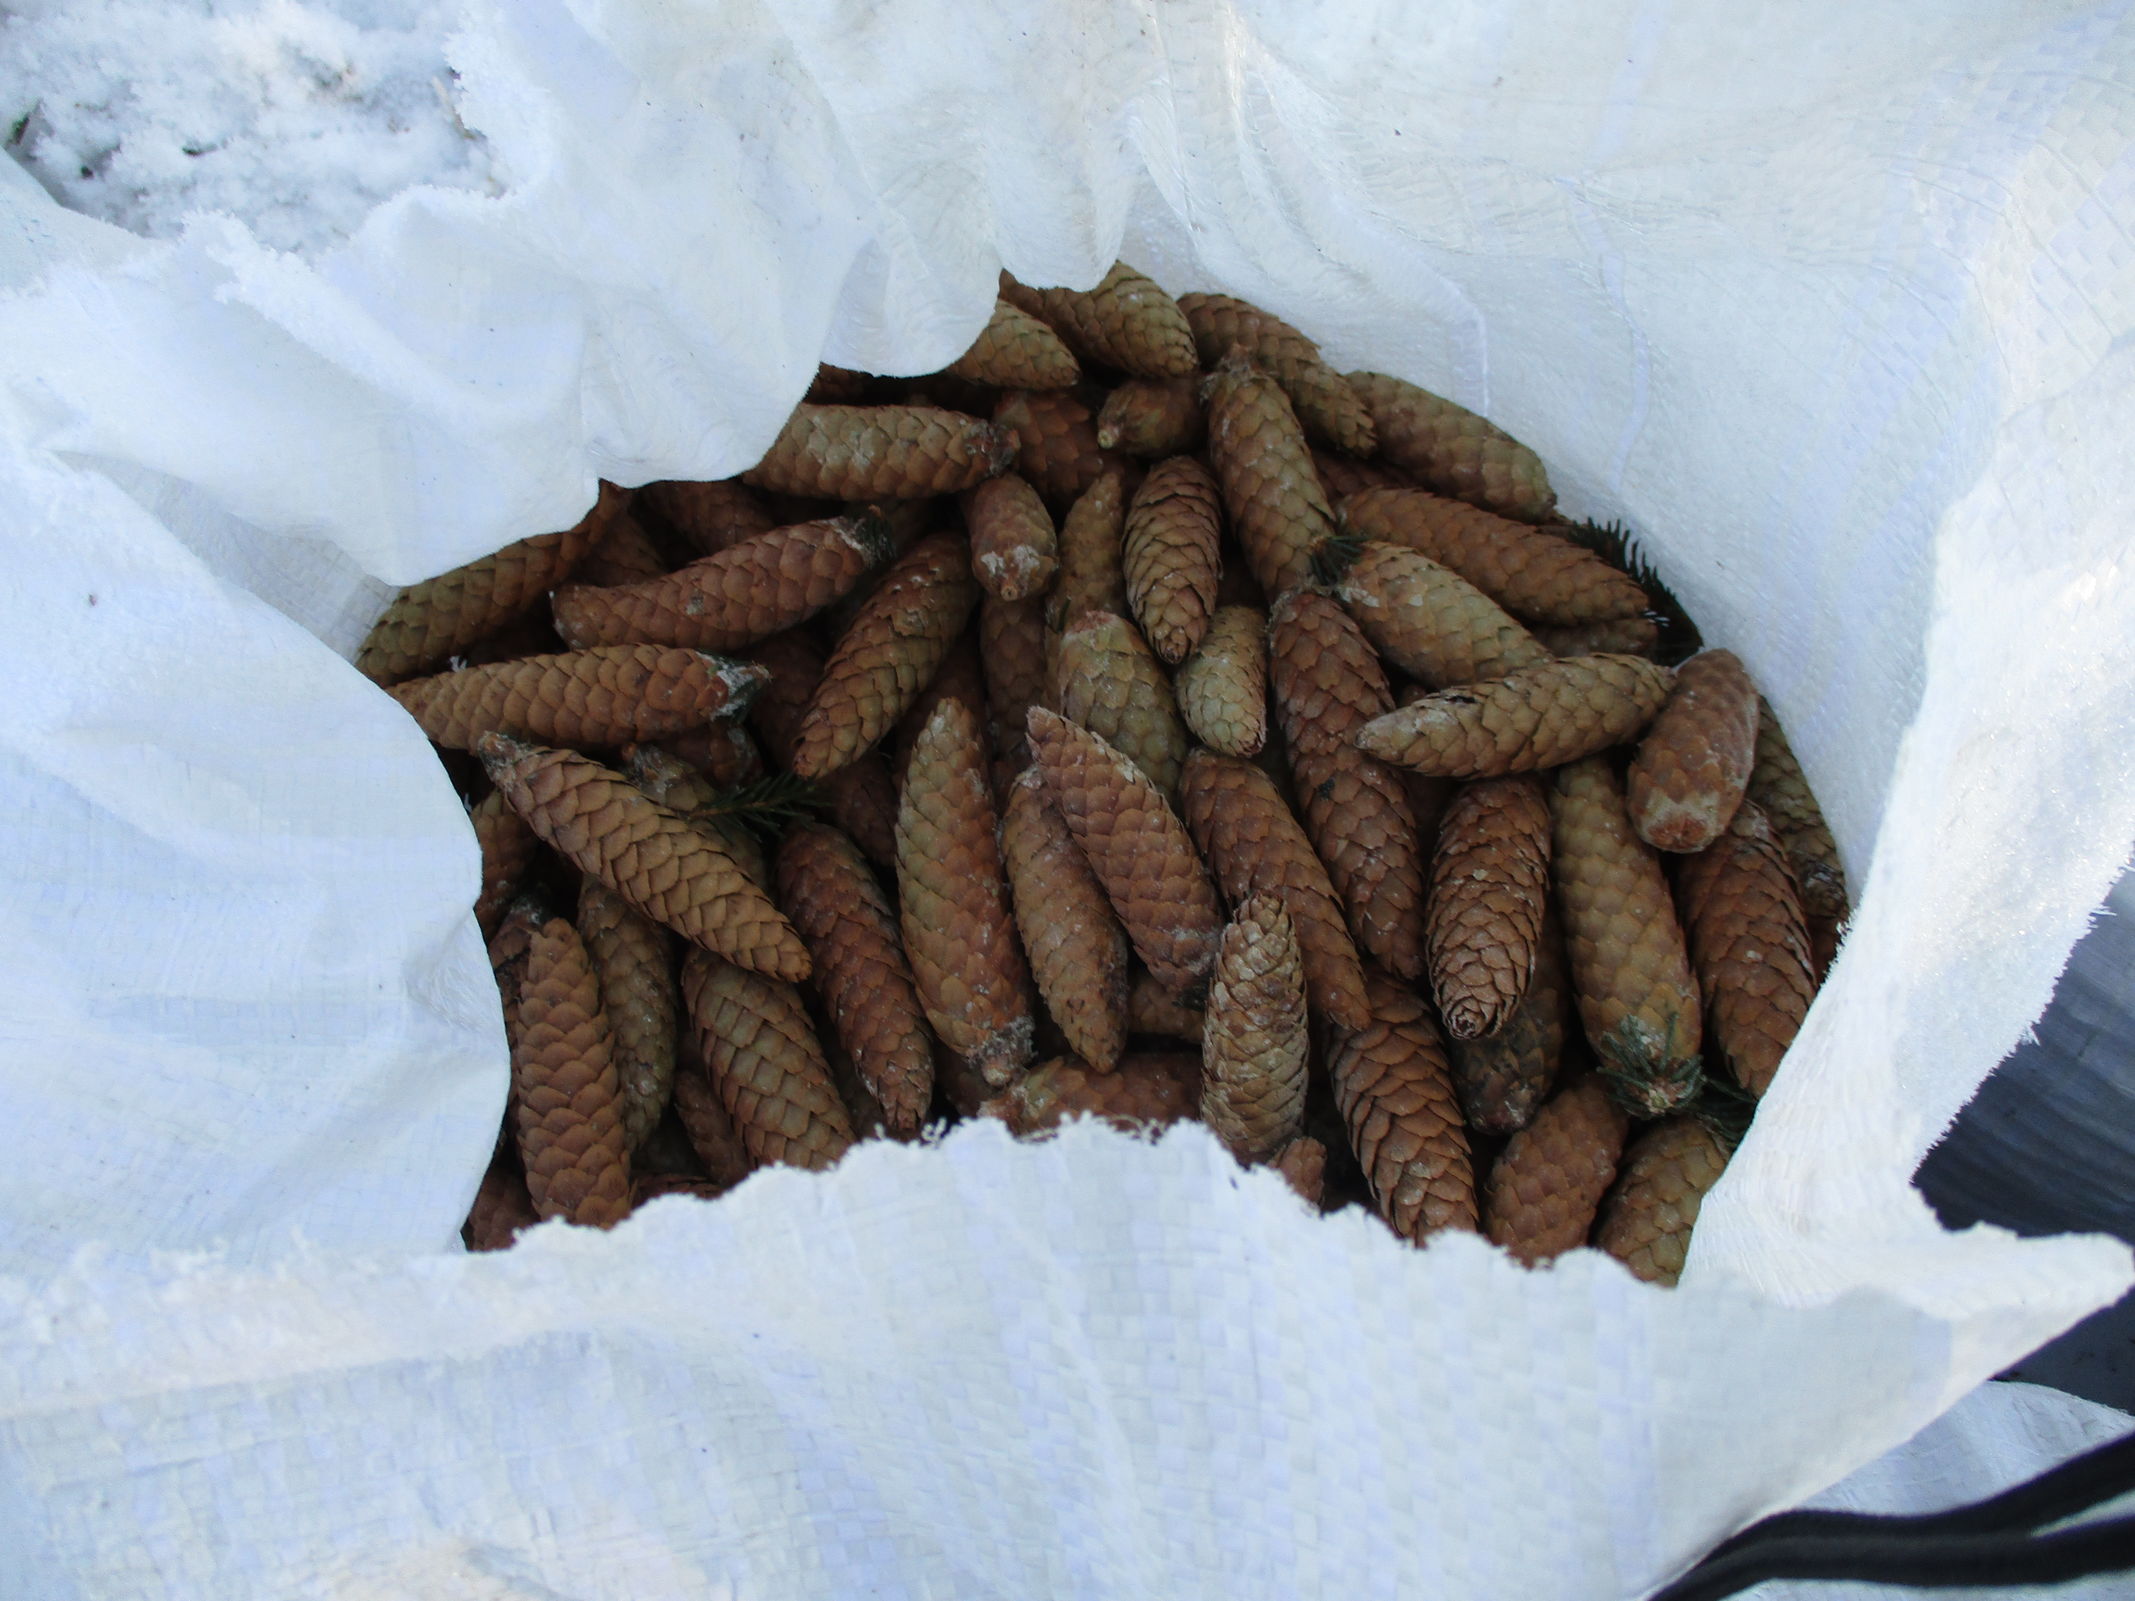 Более 15 тонн шишек елей и сосен собрали в регионе для заготовки лесосеменного сырья